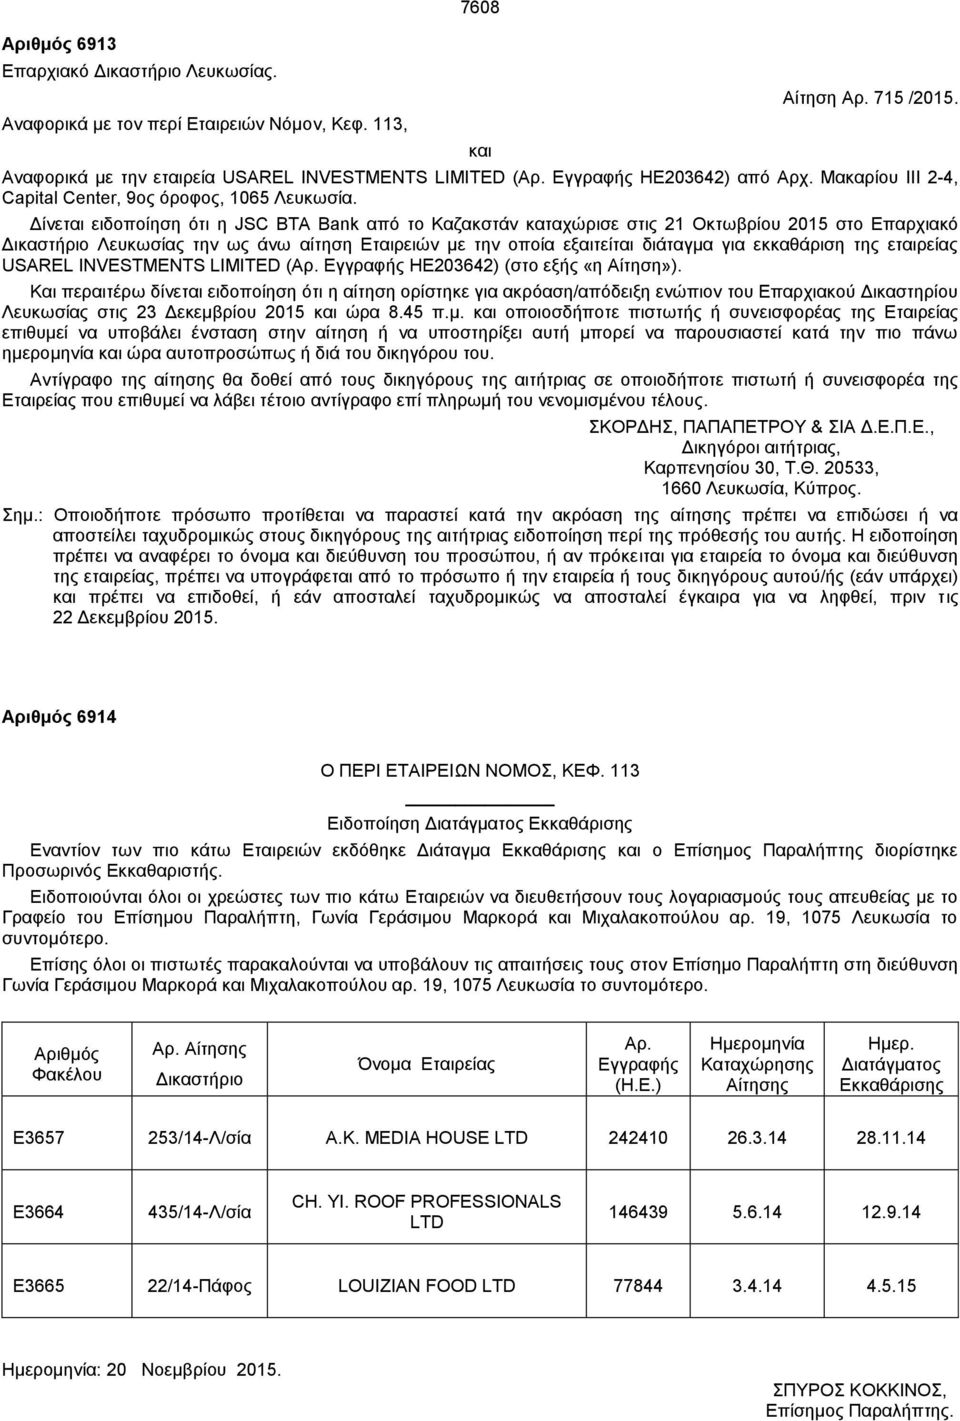 Μακαρίου ΙΙΙ 2-4, Capital Center, 9ος όροφος, 1065 Δίνεται ειδοποίηση ότι η JSC BTA Bank από το Καζακστάν καταχώρισε στις 21 Οκτωβρίου 2015 στο Επαρχιακό Δικαστήριο Λευκωσίας την ως άνω αίτηση